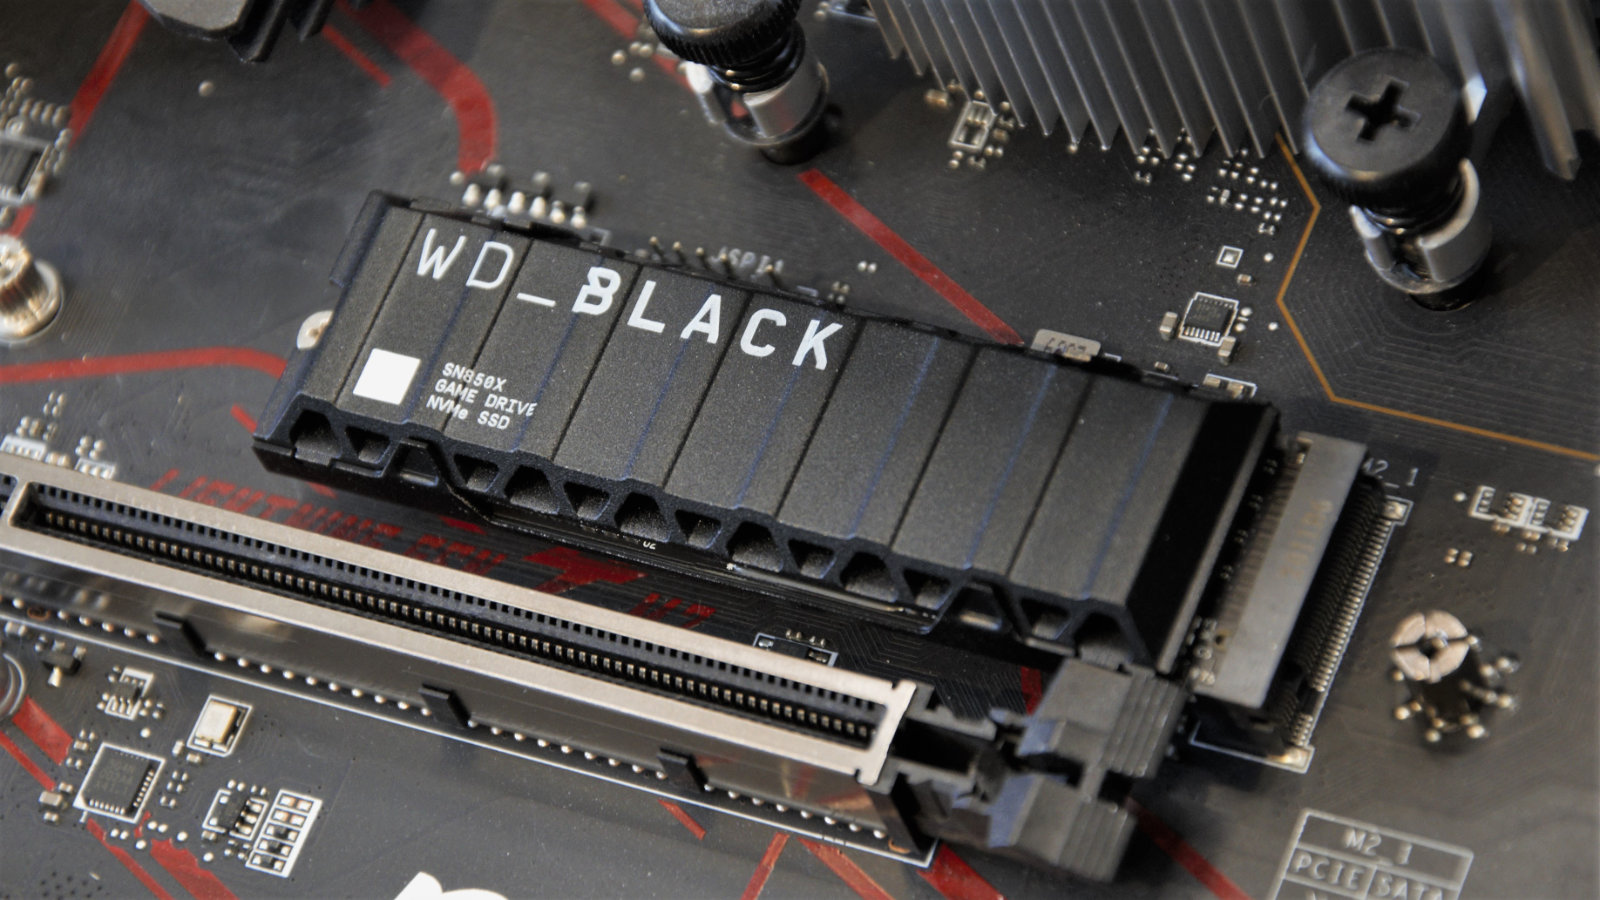 WD BLACK SN850X on MSI motherboard